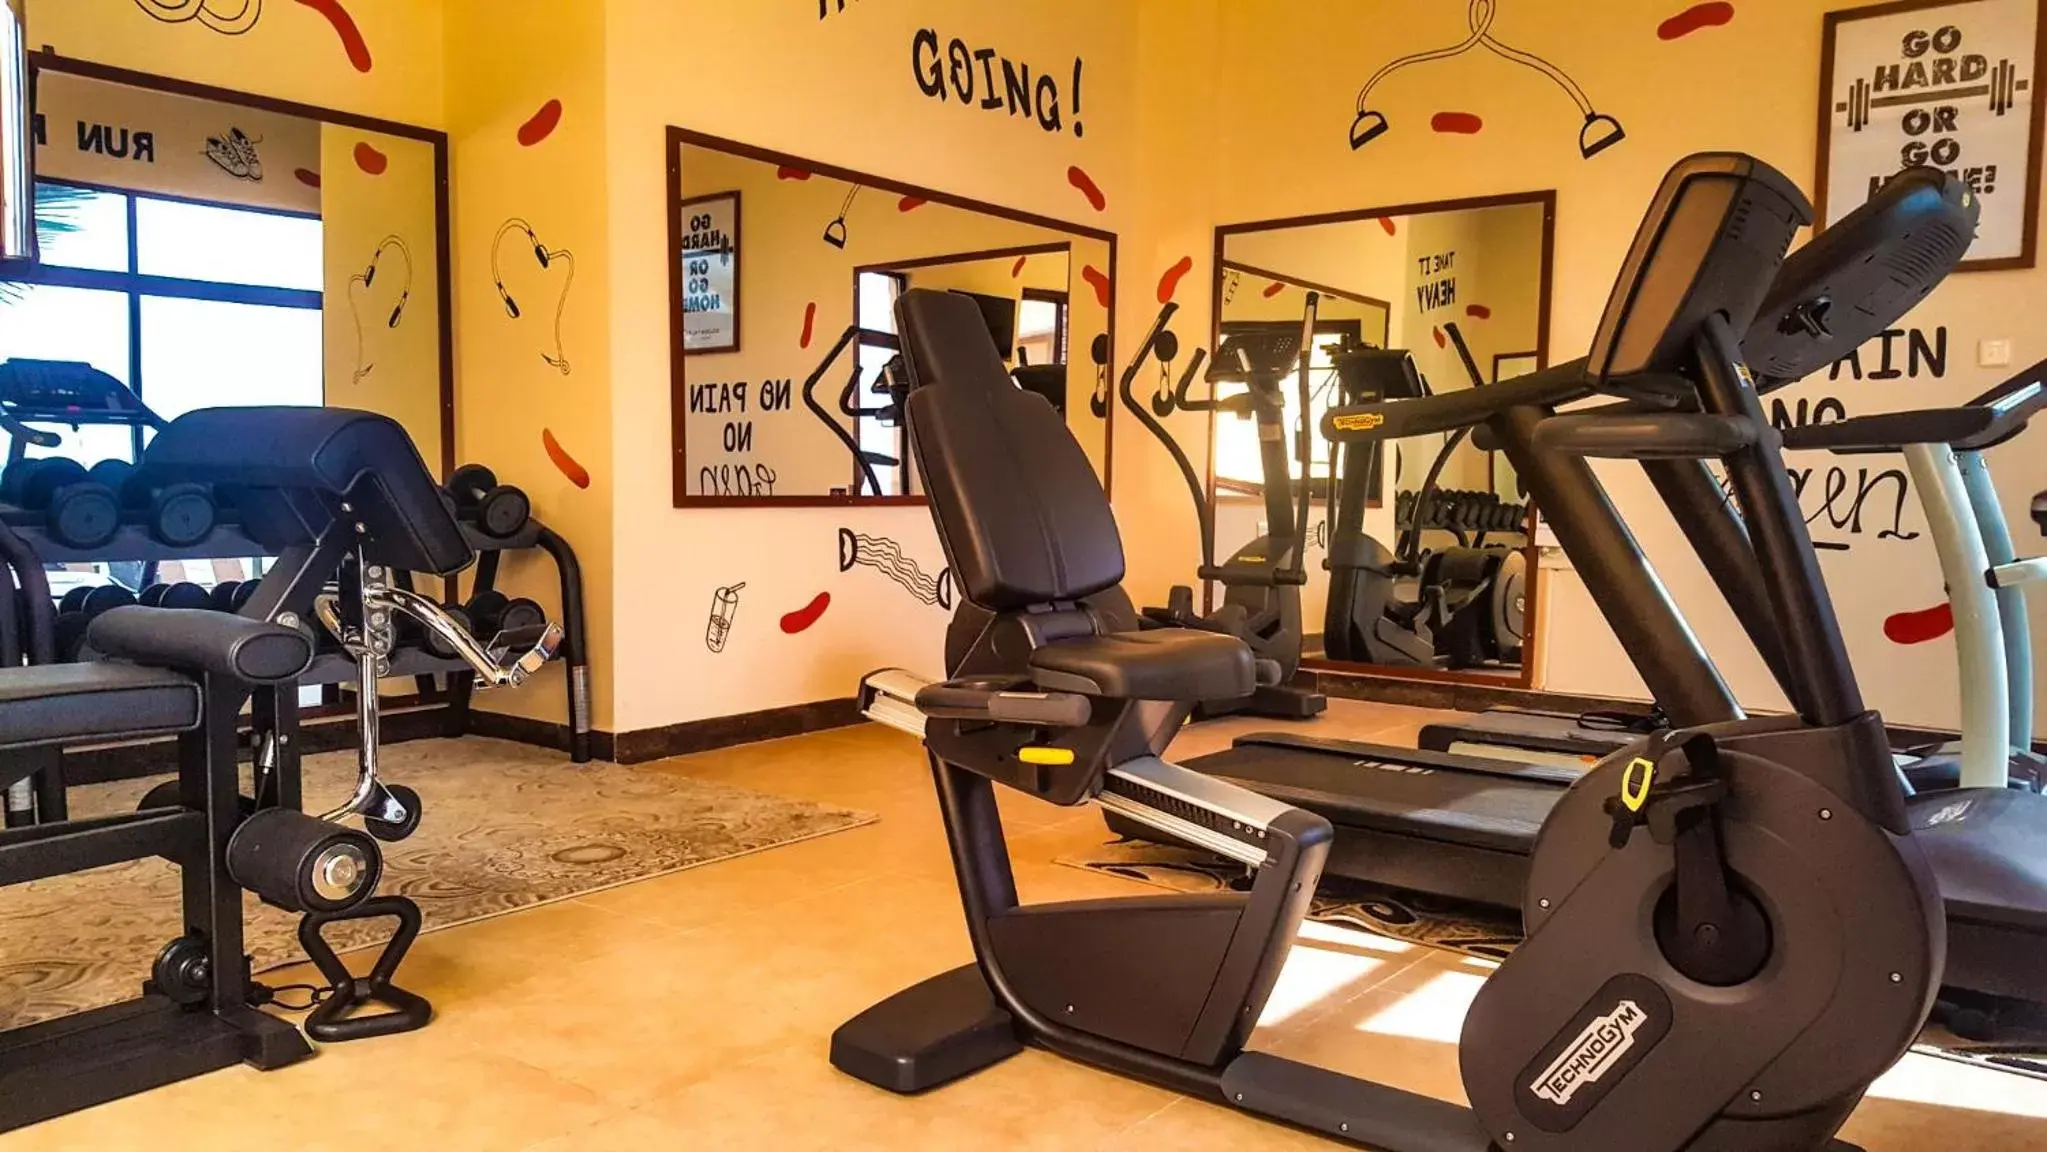 Fitness centre/facilities, Fitness Center/Facilities in Golden Tulip Zanzibar Resort